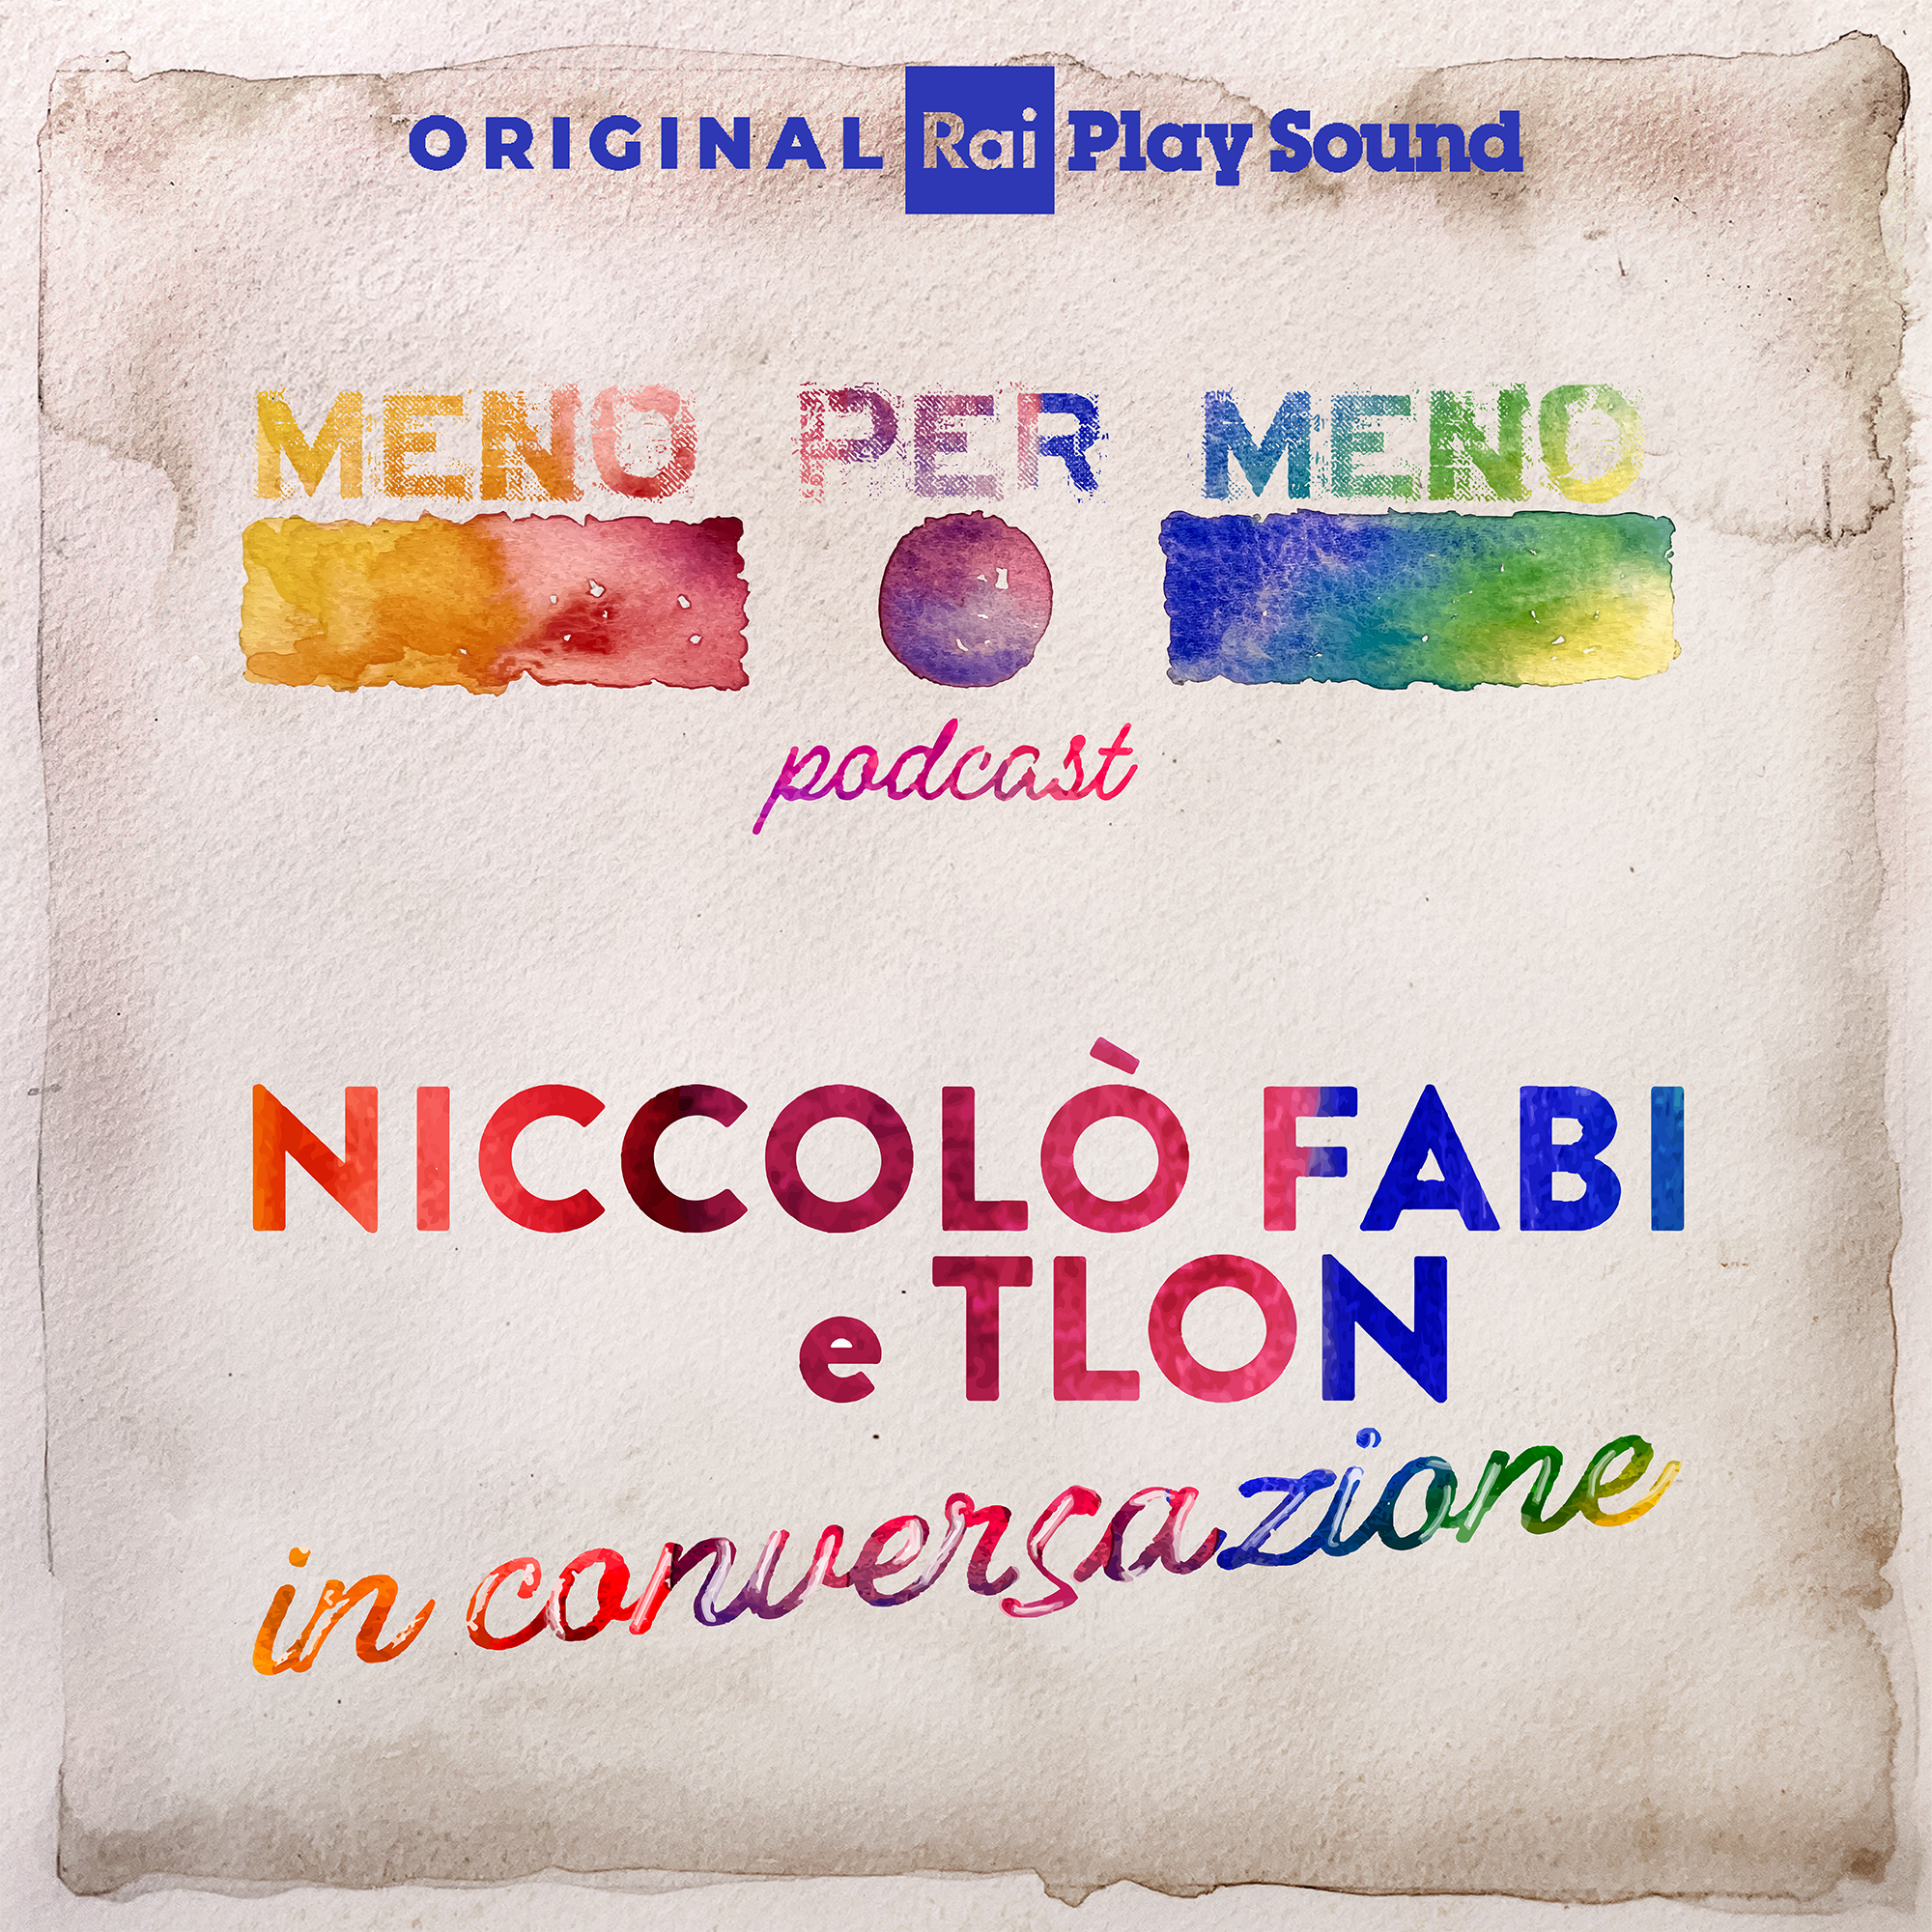 Da giovedì 15 dicembre è disponibile “Meno per meno podcast”, in esclusiva su RaiPlay Sound, con Niccolò Fabi